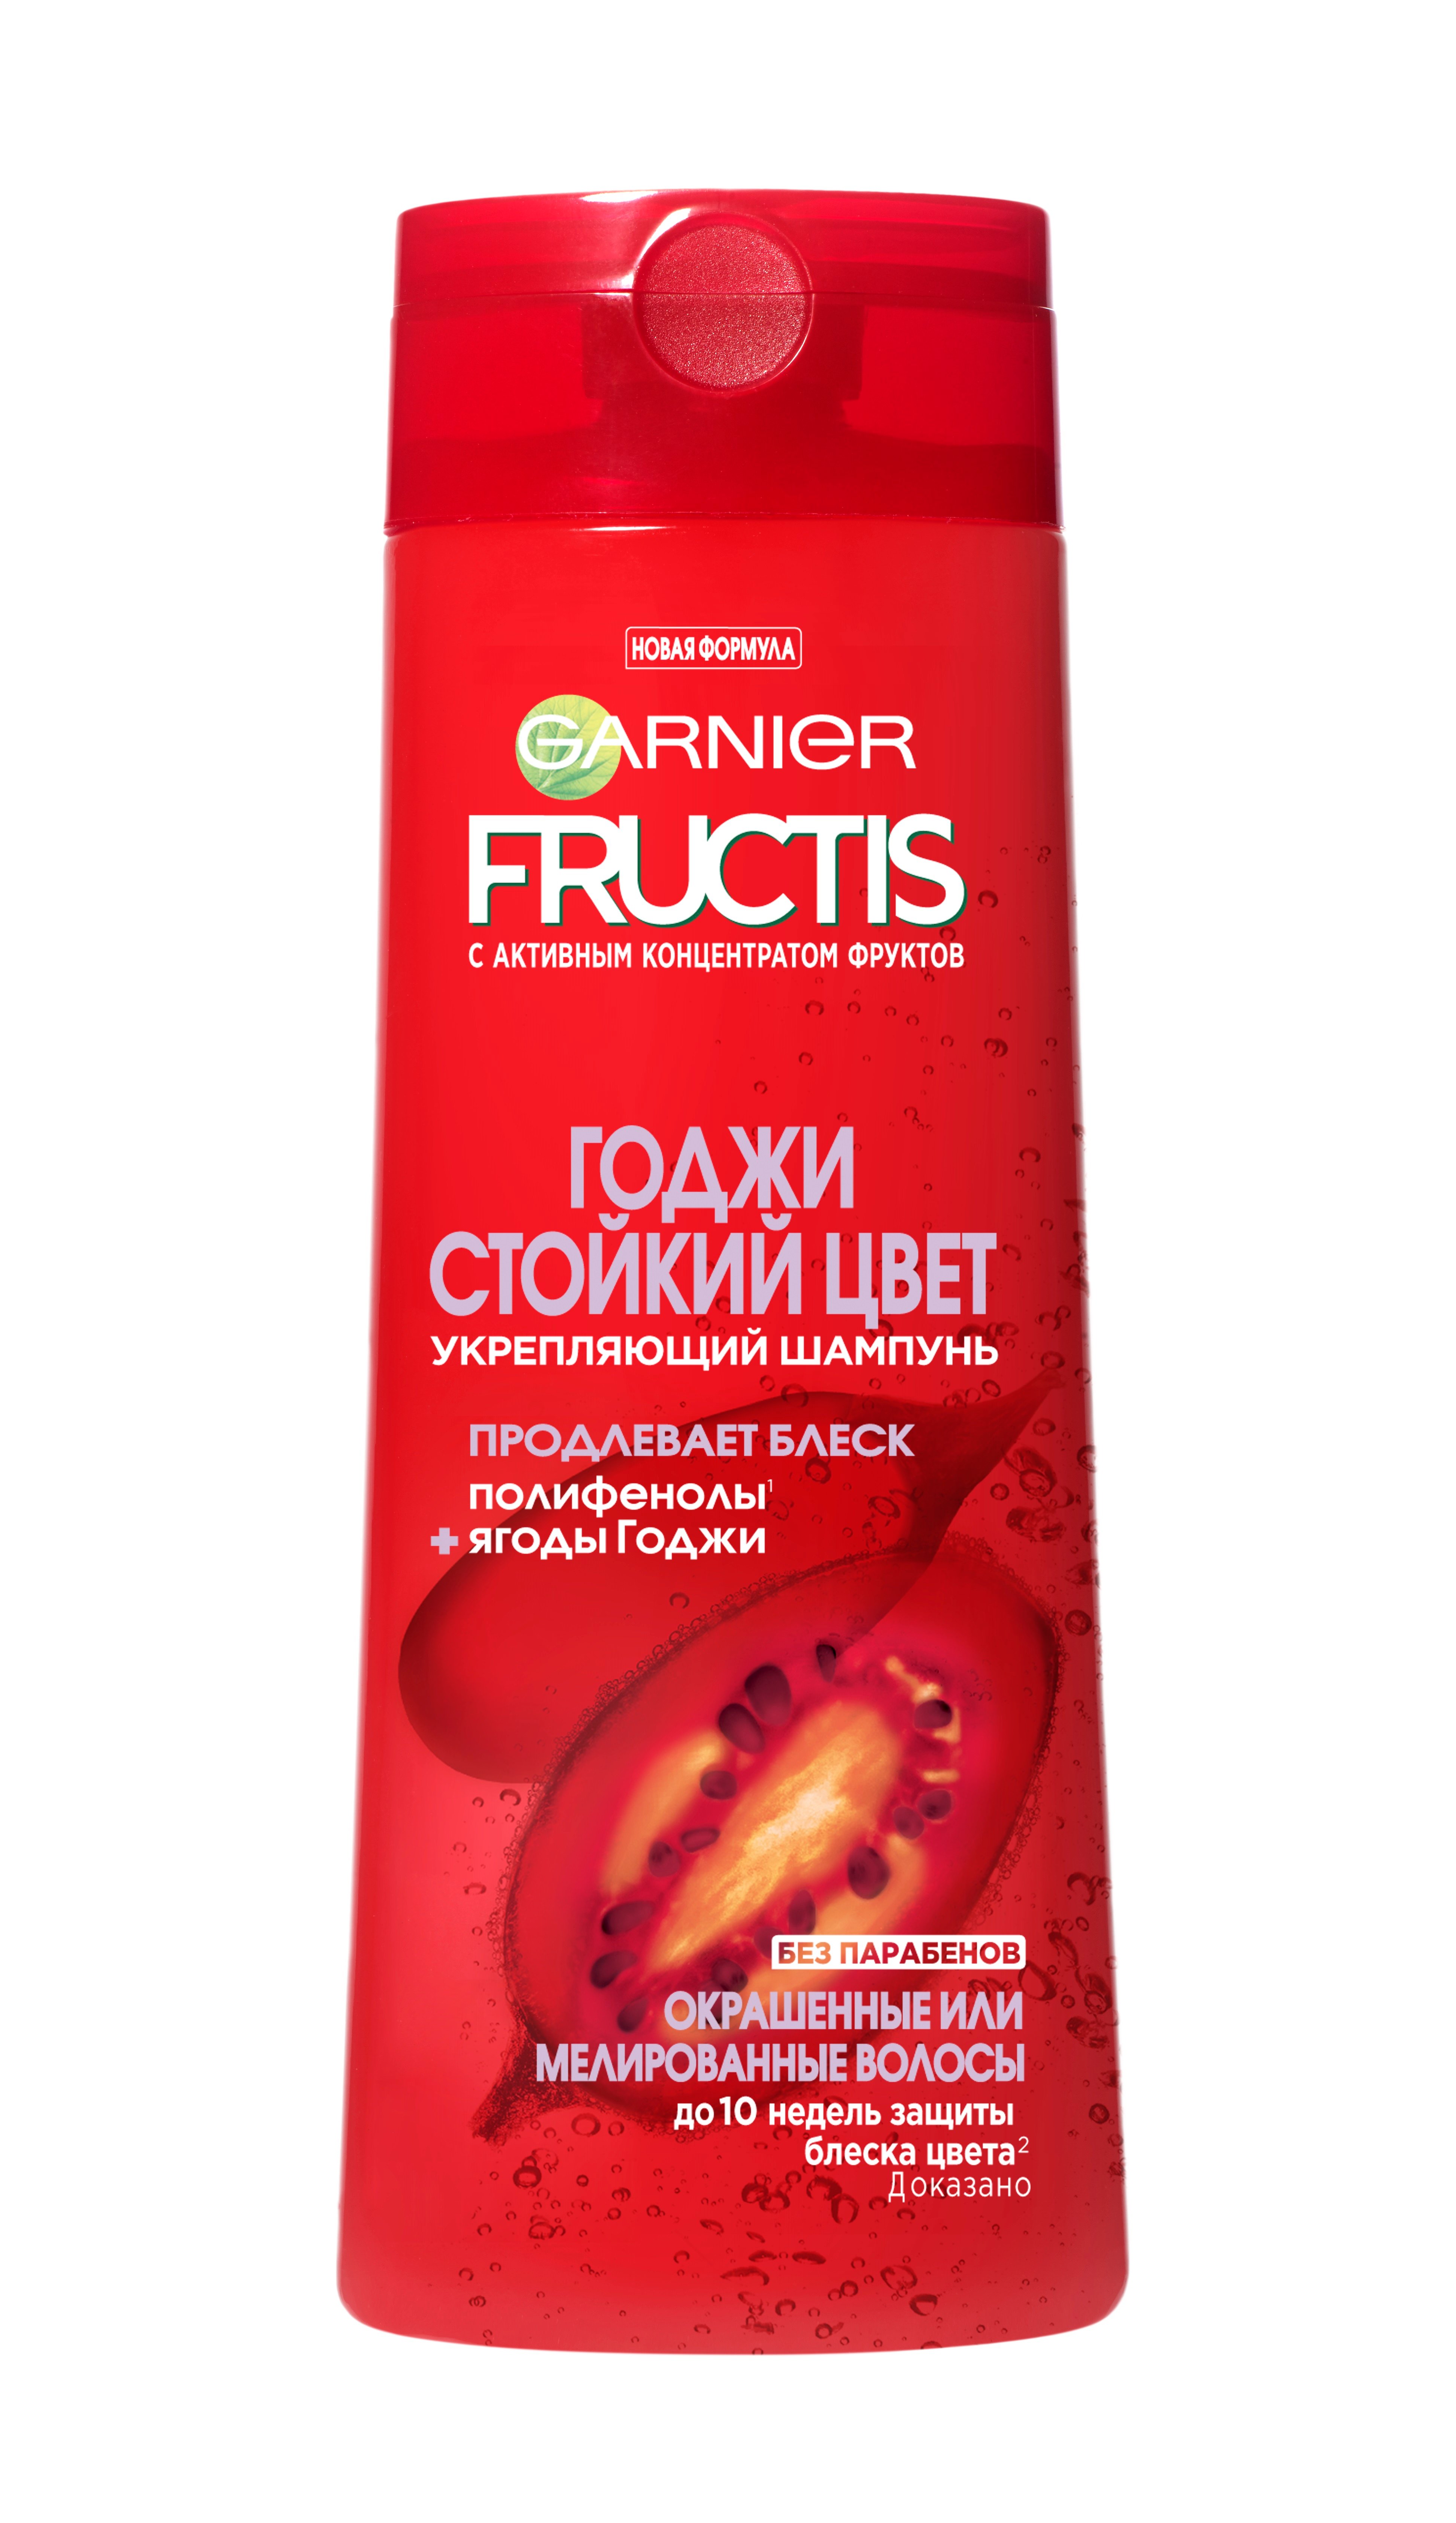 Шампунь Garnier Fructis Годжи Стойкий цвет, для окрашенных или мелированных волос, 400 мл - фото 1